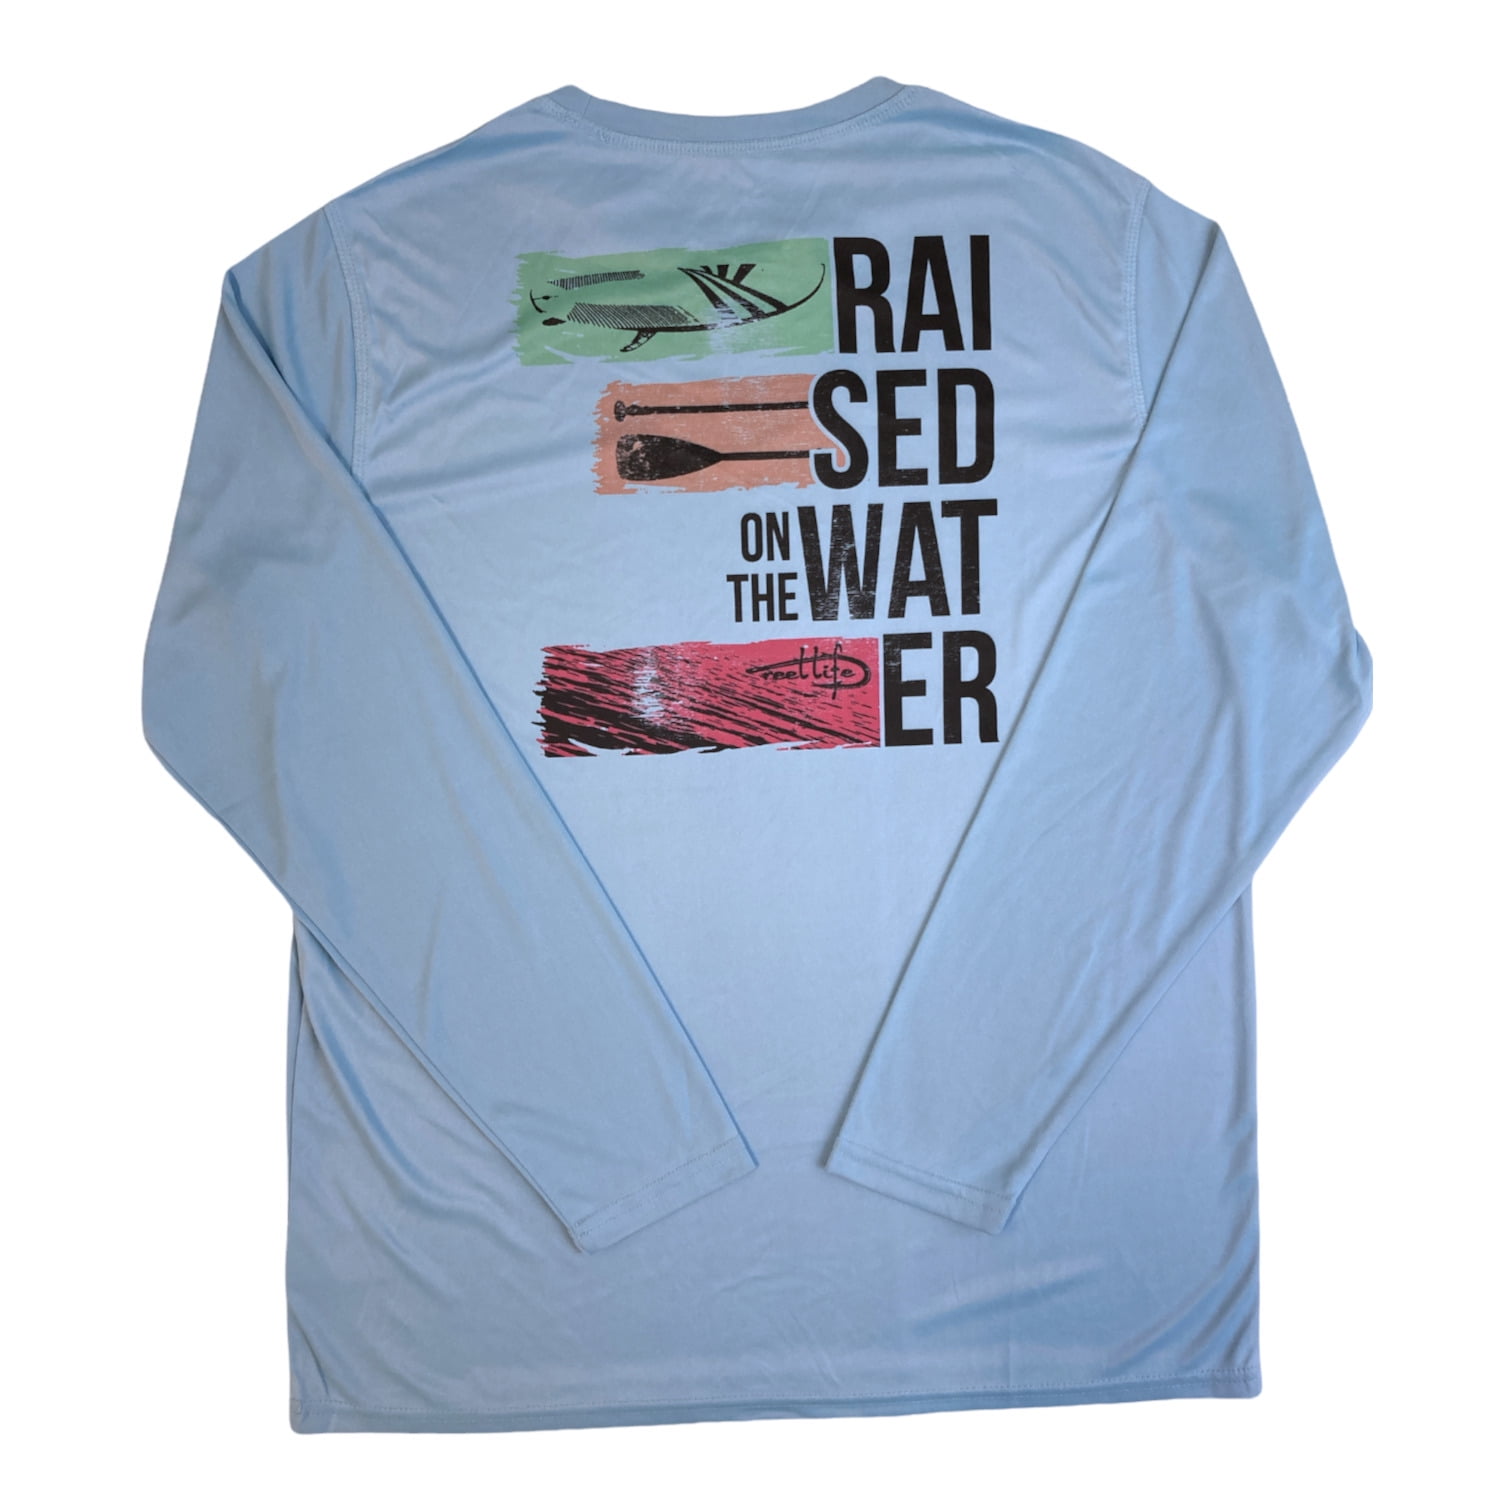 目玉商品 Reel Life Men´s Sun Defender Shirt XXL Long Sleeve UV Protection Gray  海外 即決